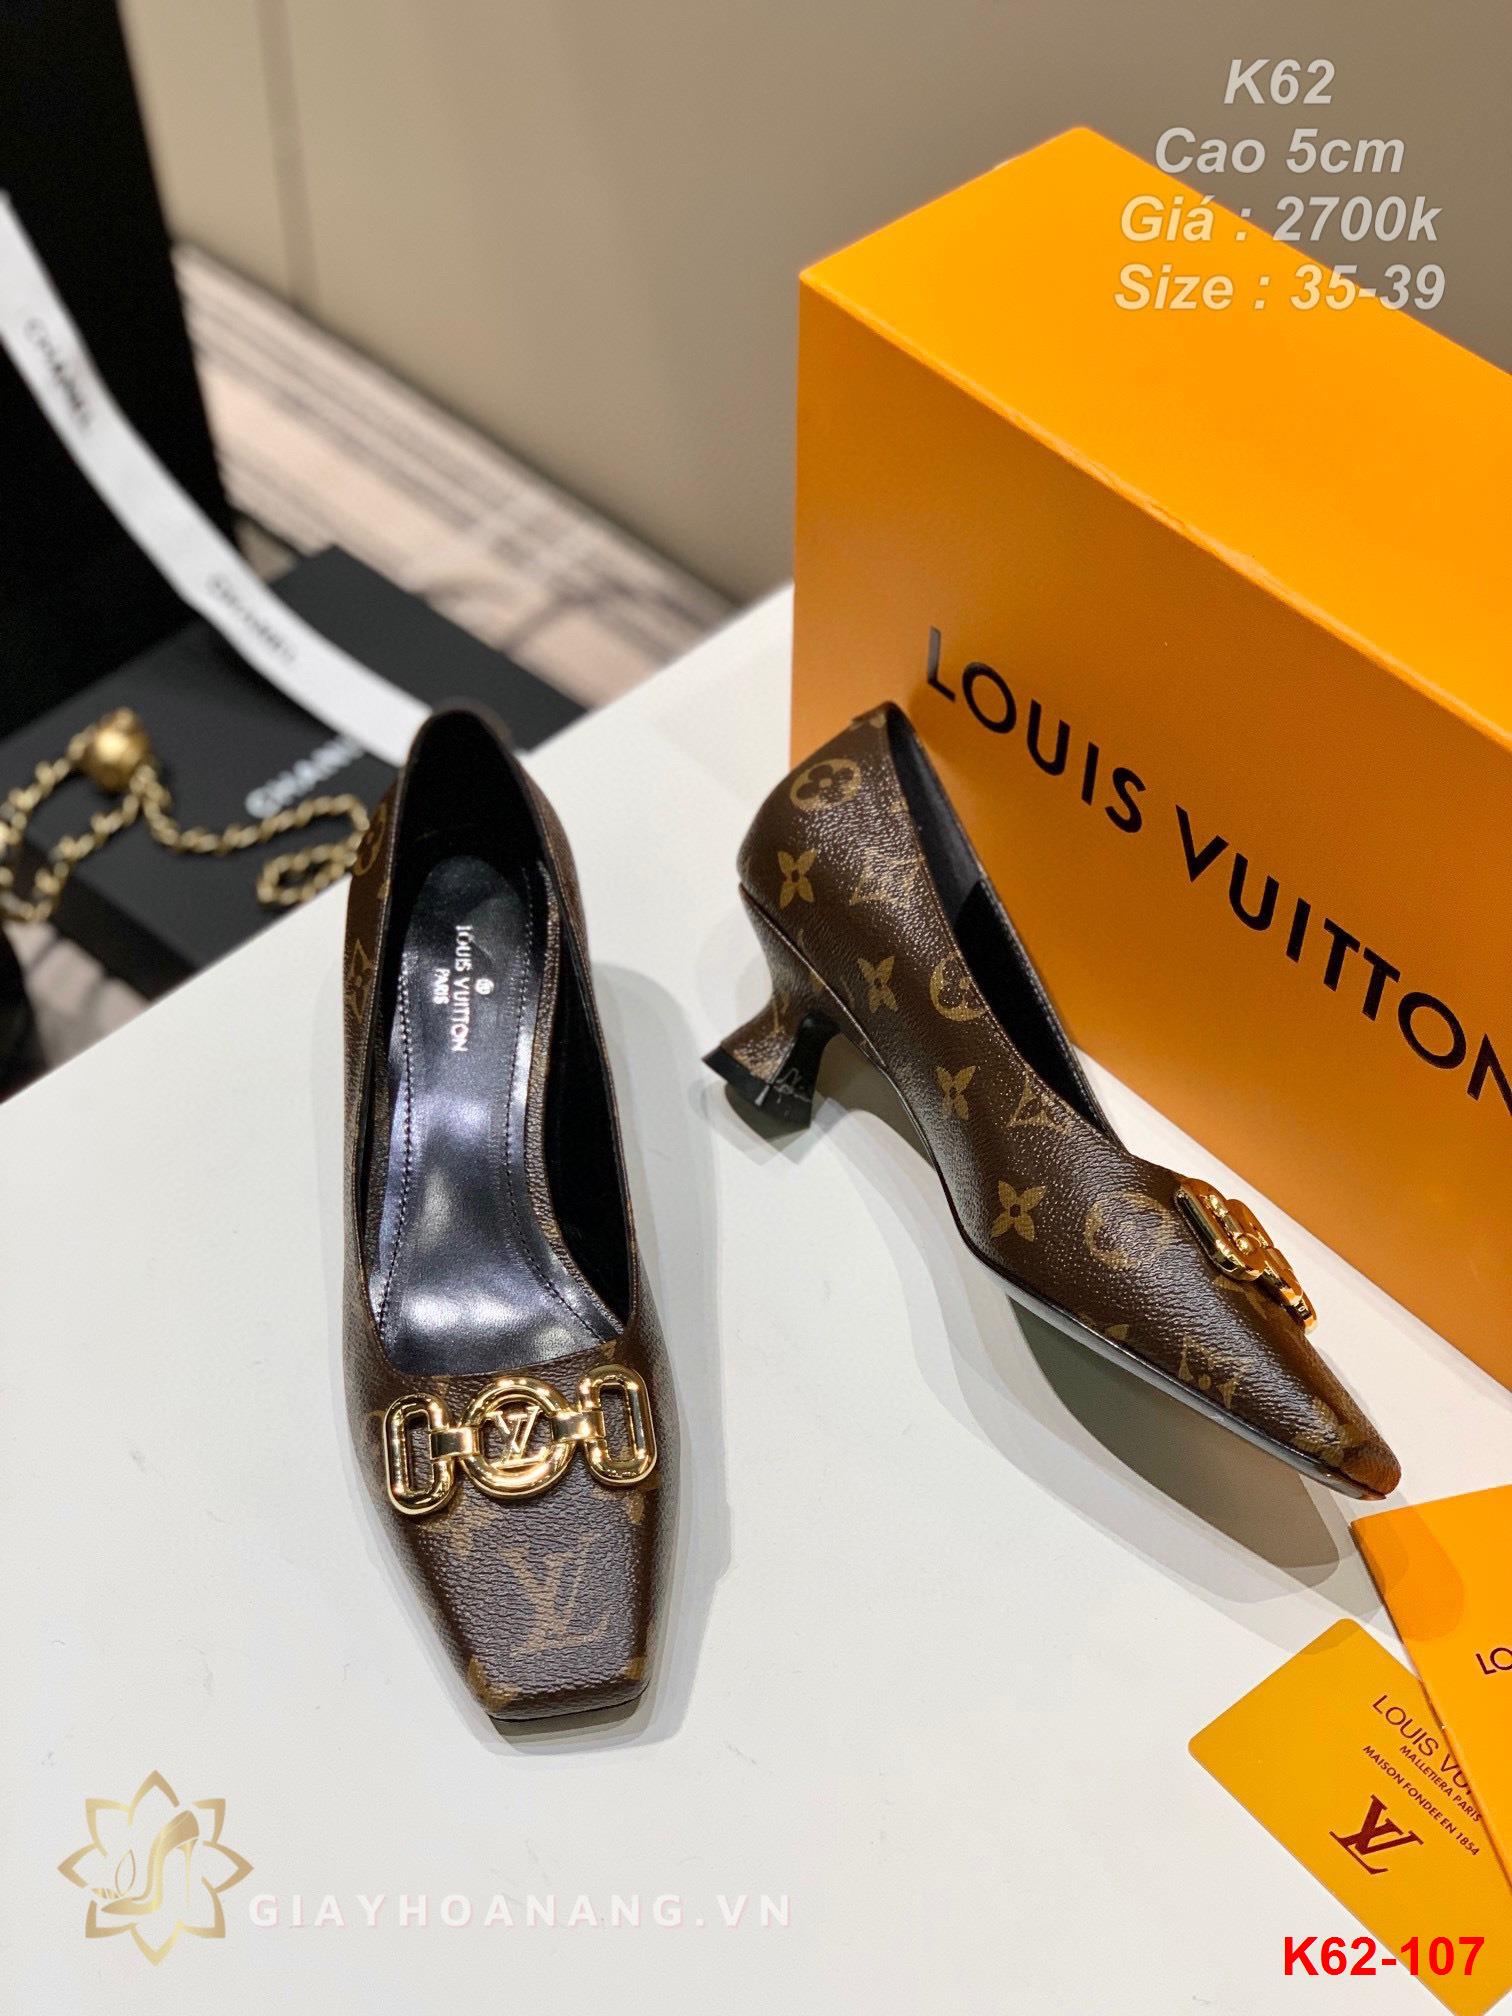 K62-107 Louis Vuitton giày cao 5cm siêu cấp